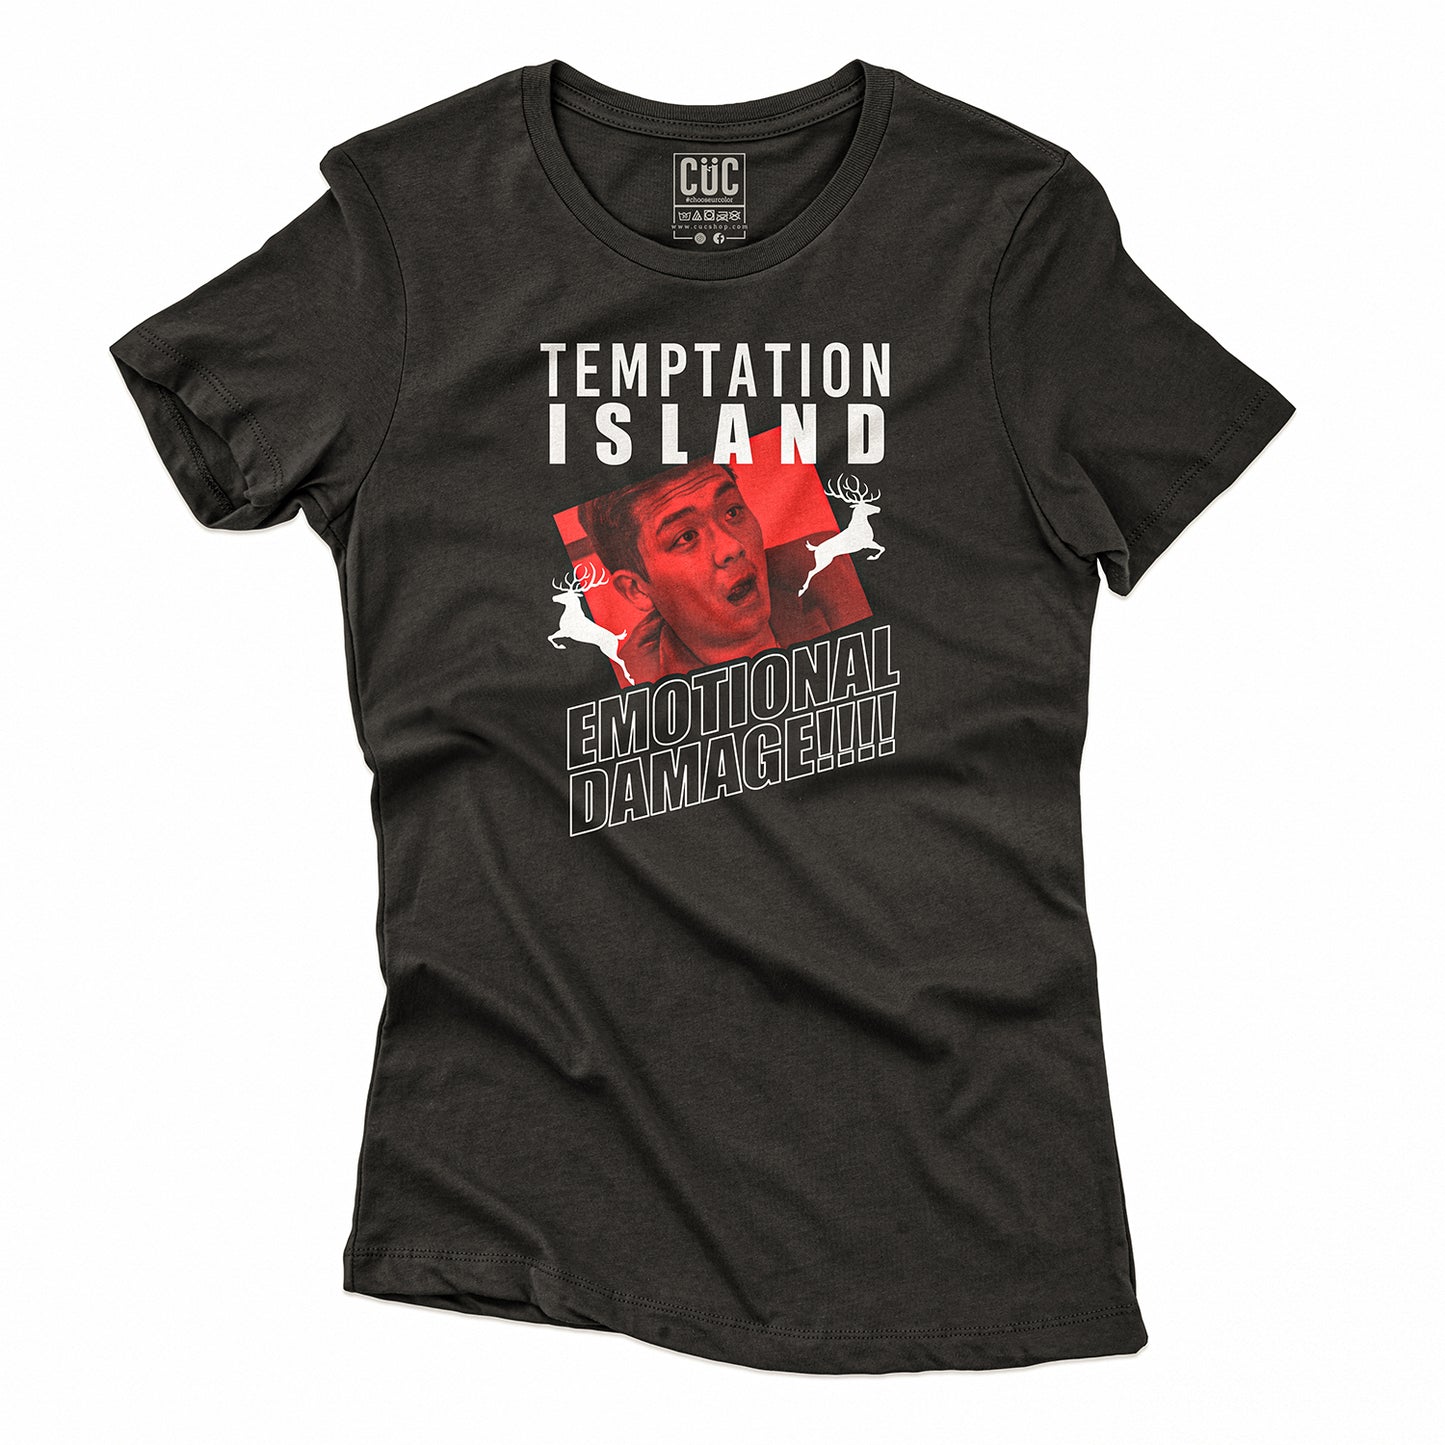 CUC T-Shirt TEMPTATION ISLAND - Emotional Damage - Meme - Tv Show  #chooseurcolor